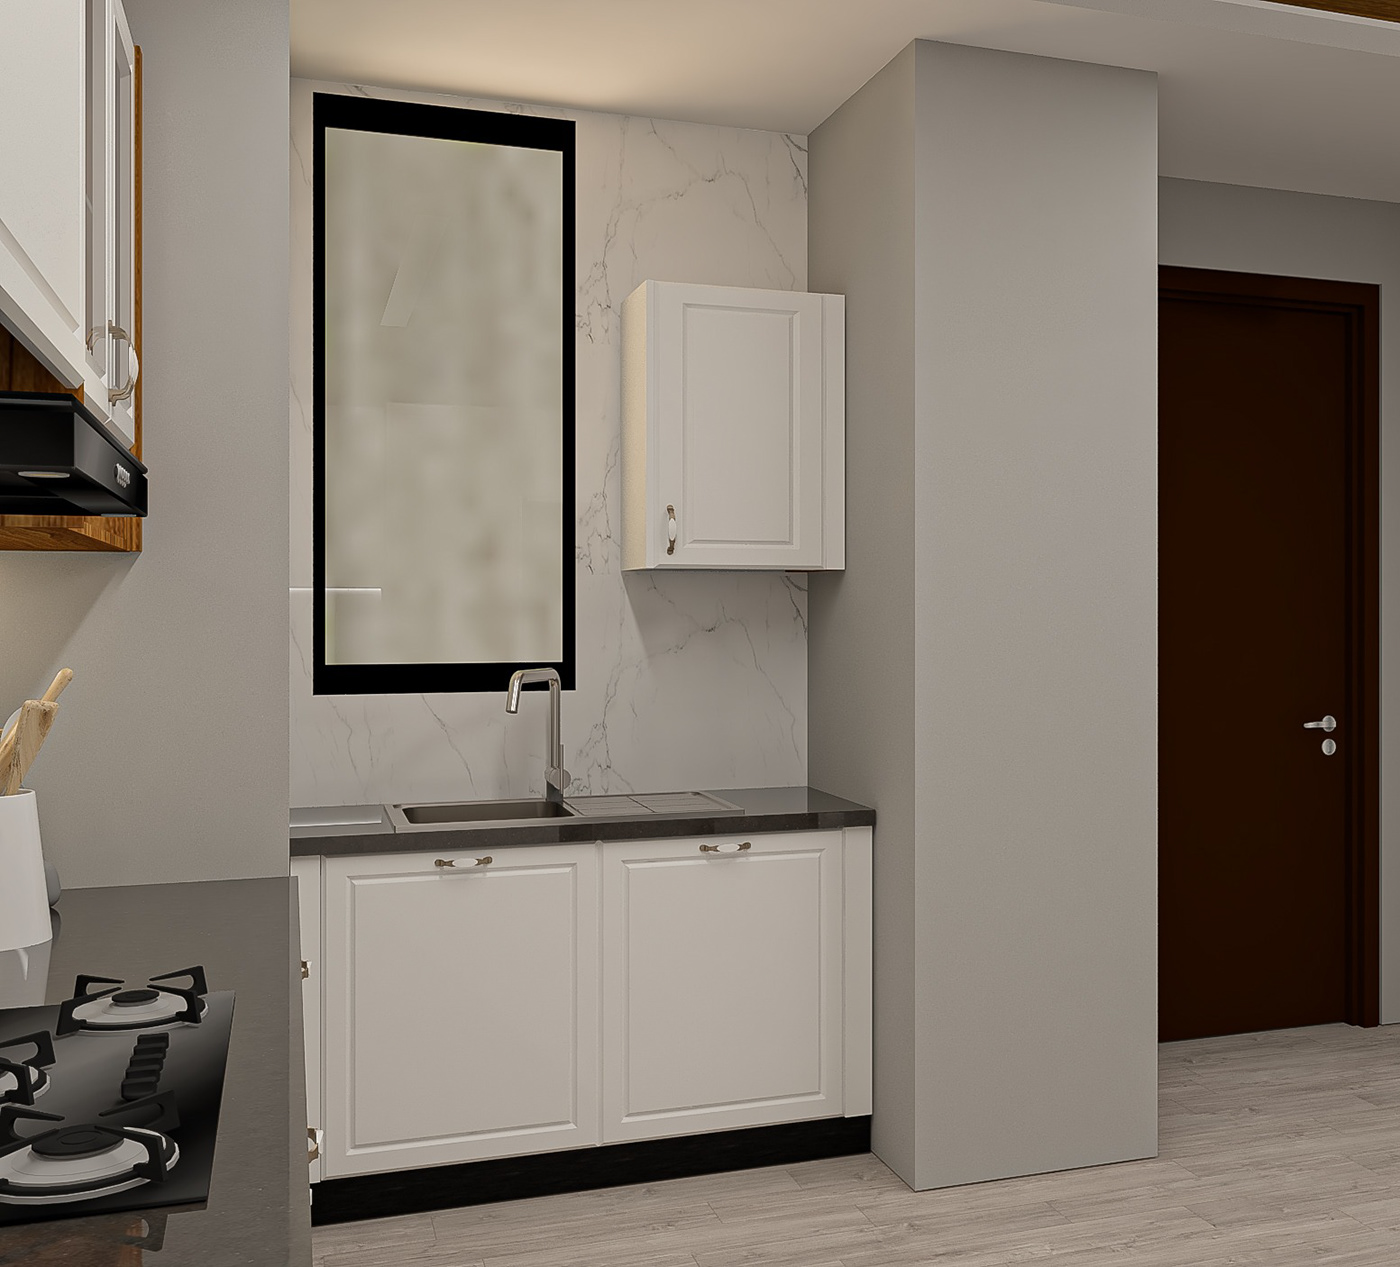 kitchen interior design  visualization 3D Render modular kitchen modular furniture